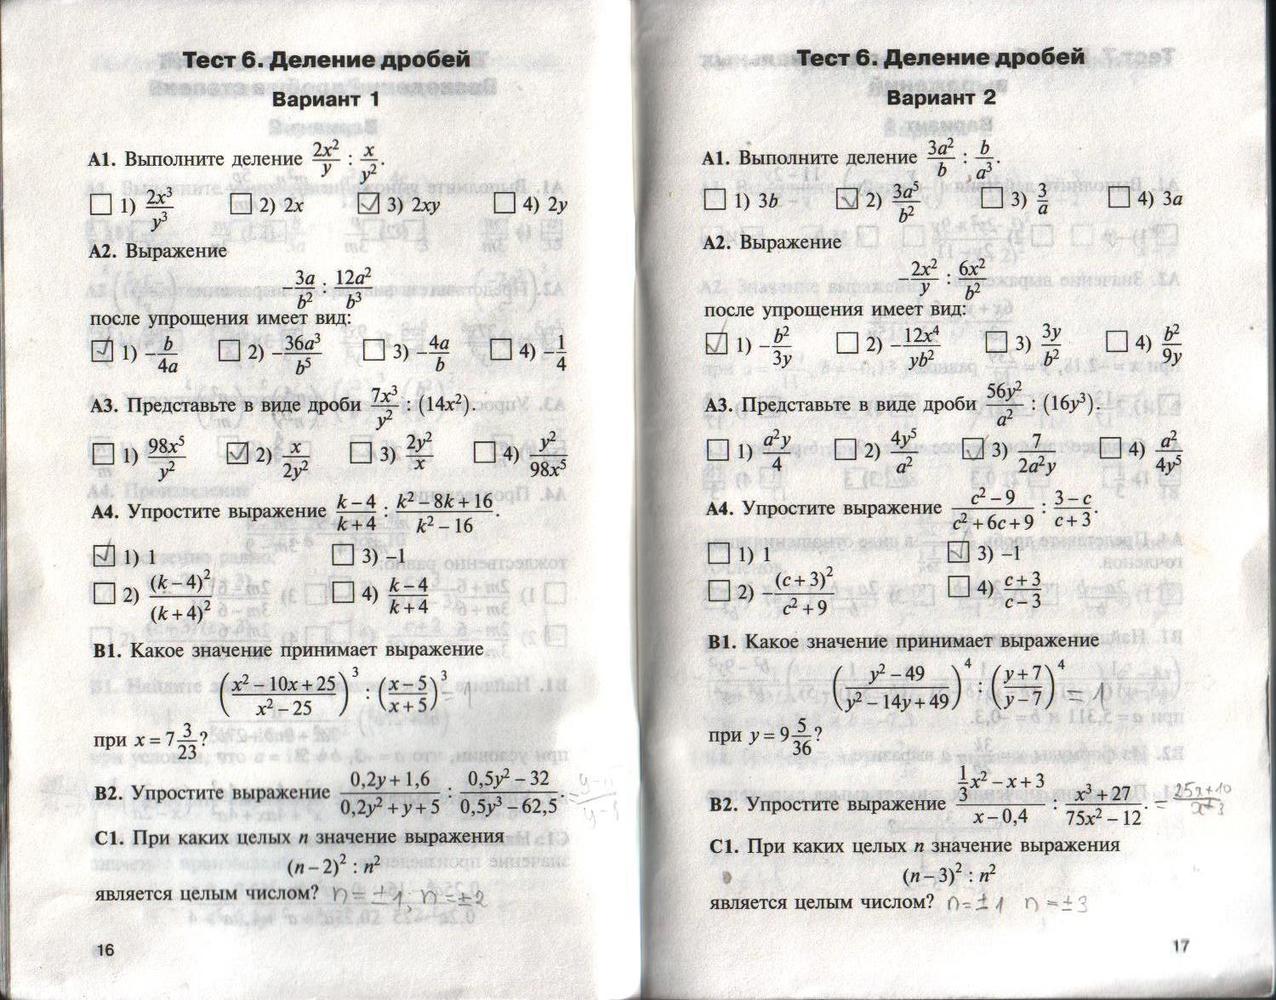 Тест б 22. Гдз по контрольно измерительные материалы Алгебра 10 класс. Контрольные работы по алгебре 8 класс а1 а2 б1 б2. Контрольно измерительные материалы 10 класс Алгебра. Контрольно измерительные материалы 11 класс Алгебра.